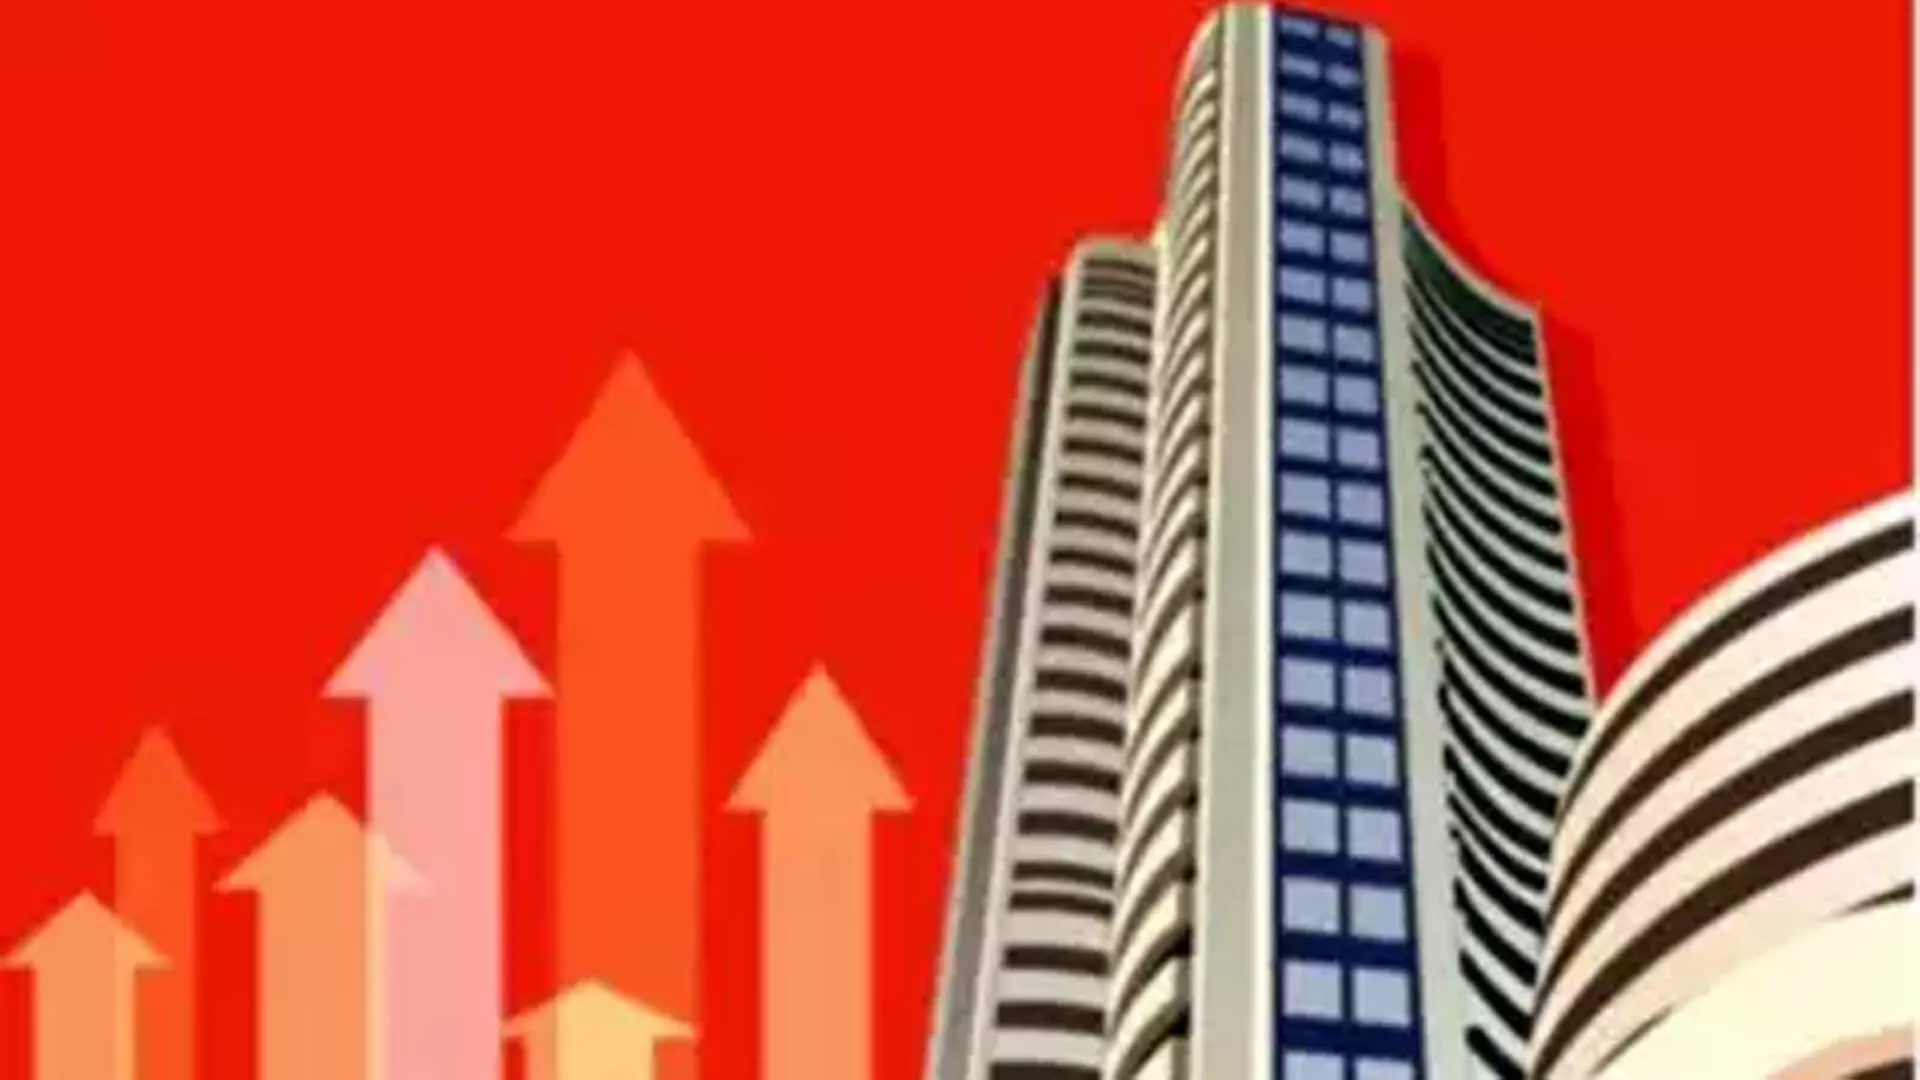 MUMBAI: सेंसेक्स 79,000 के करीब, आरआईएल का मार्केटकैप 20 लाख करोड़ रुपये से ऊपर